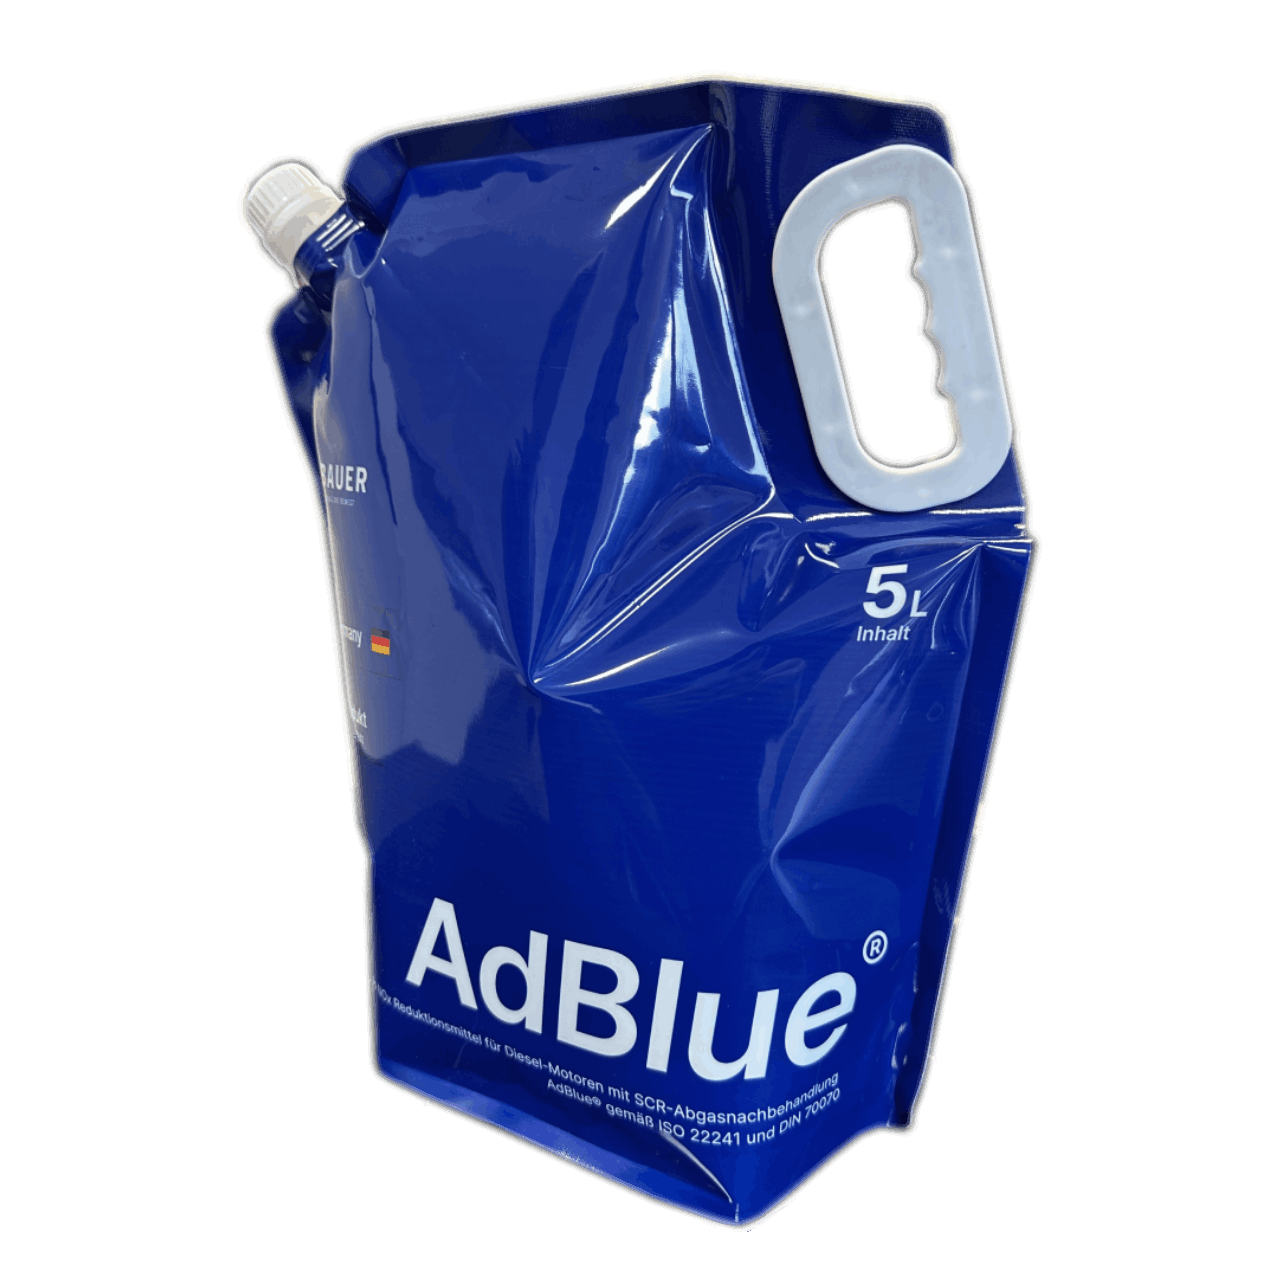 Bauer Blue - AdBlue kaufen schnell, einfach & günstig – Bauer Blue